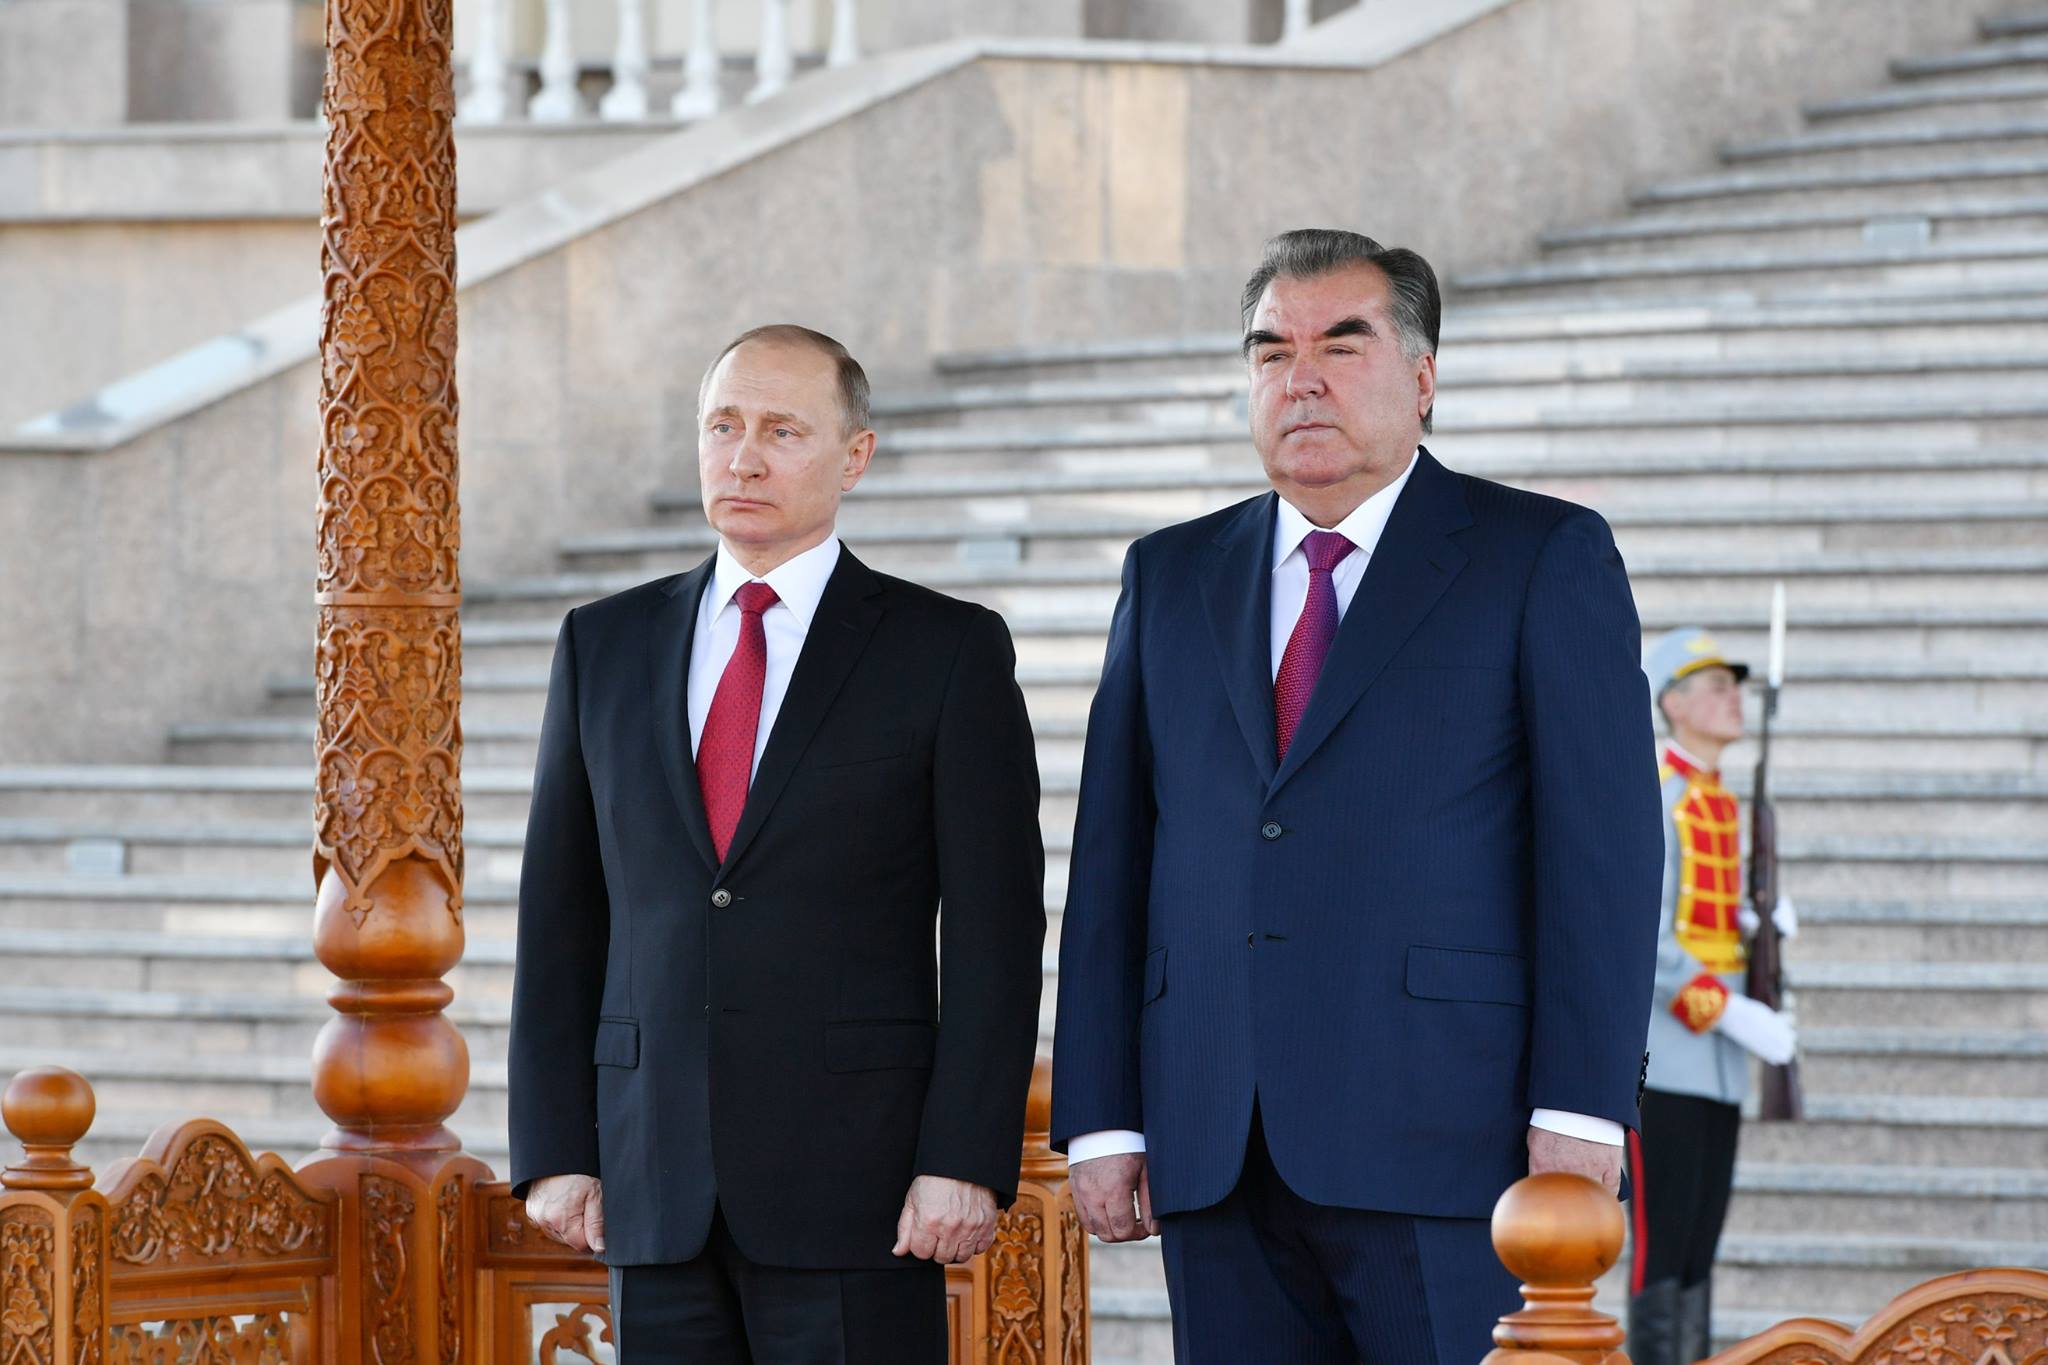 Отношение к таджикам в россии